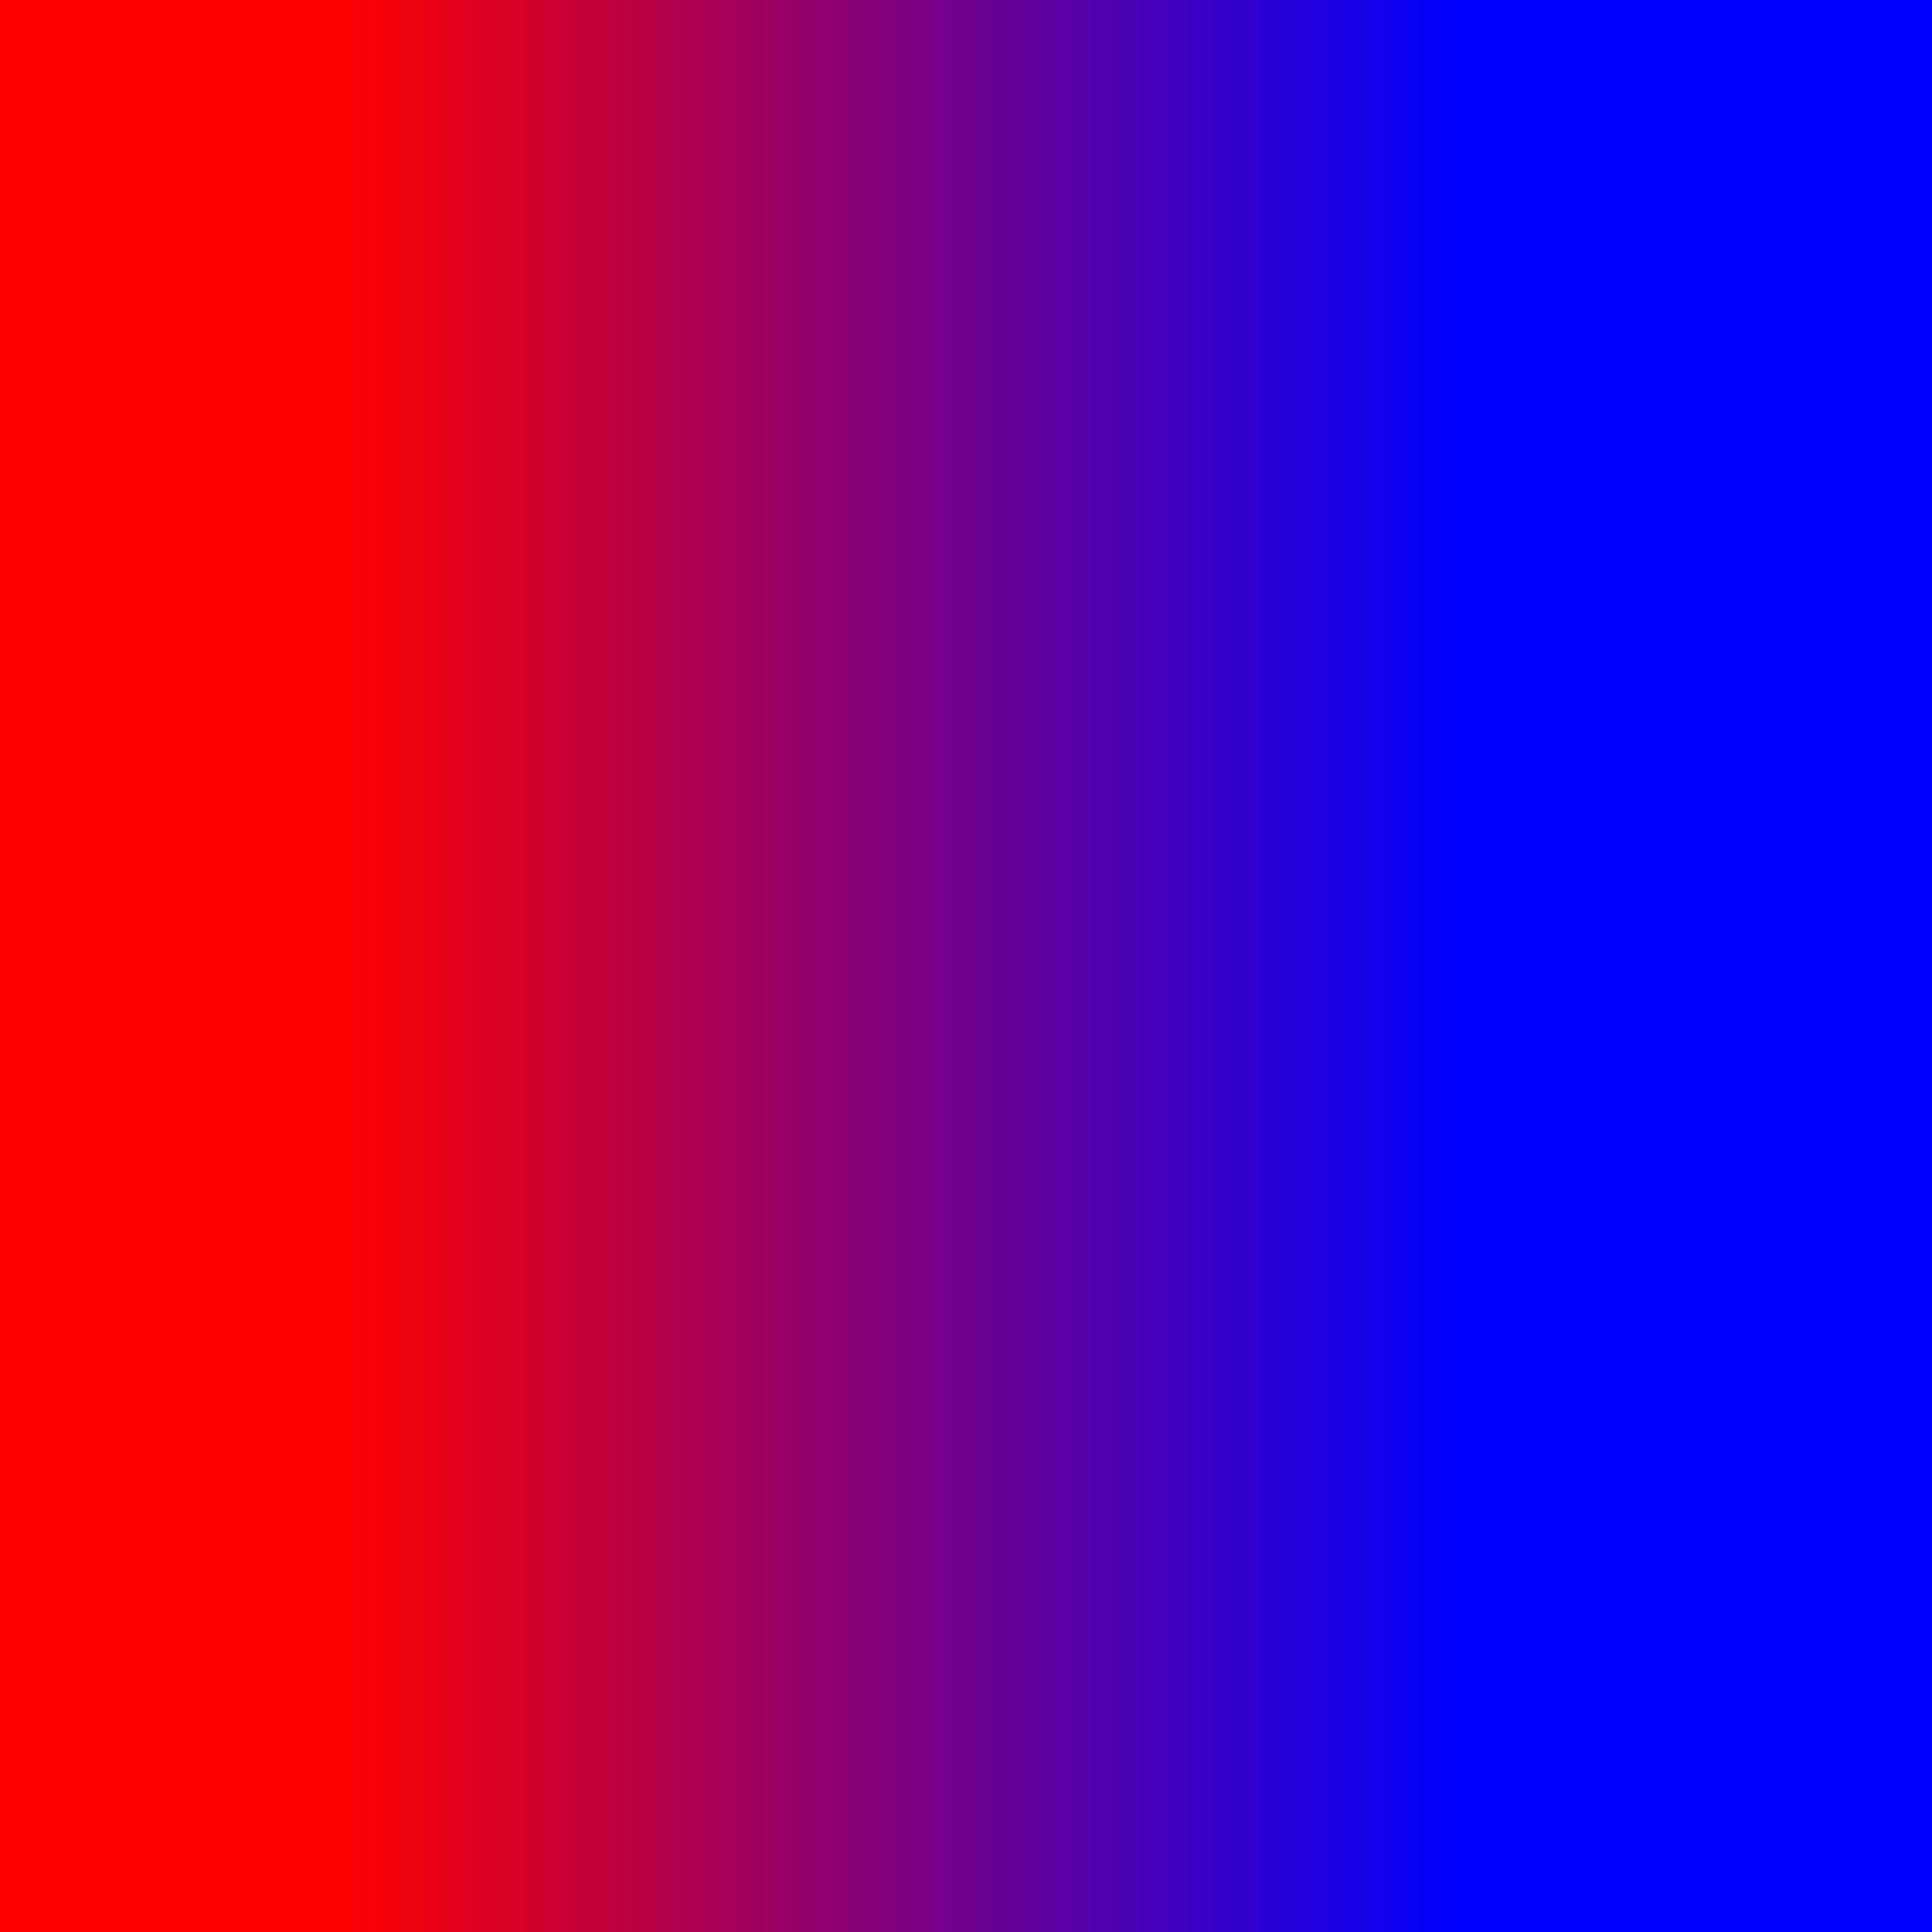 Wallpaper gradient nền đỏ và xanh lam: Wallpaper gradient nền đỏ và xanh lam là sự kết hợp hoàn hảo giữa màu đỏ cùng xanh lam. Bức tranh trở nên sống động và đầy sức sống nhờ vào sự phối hợp tuyệt vời của hai sắc màu này. Hãy tận hưởng sự phong phú và độc đáo của Wallpaper gradient nền đỏ và xanh lam.